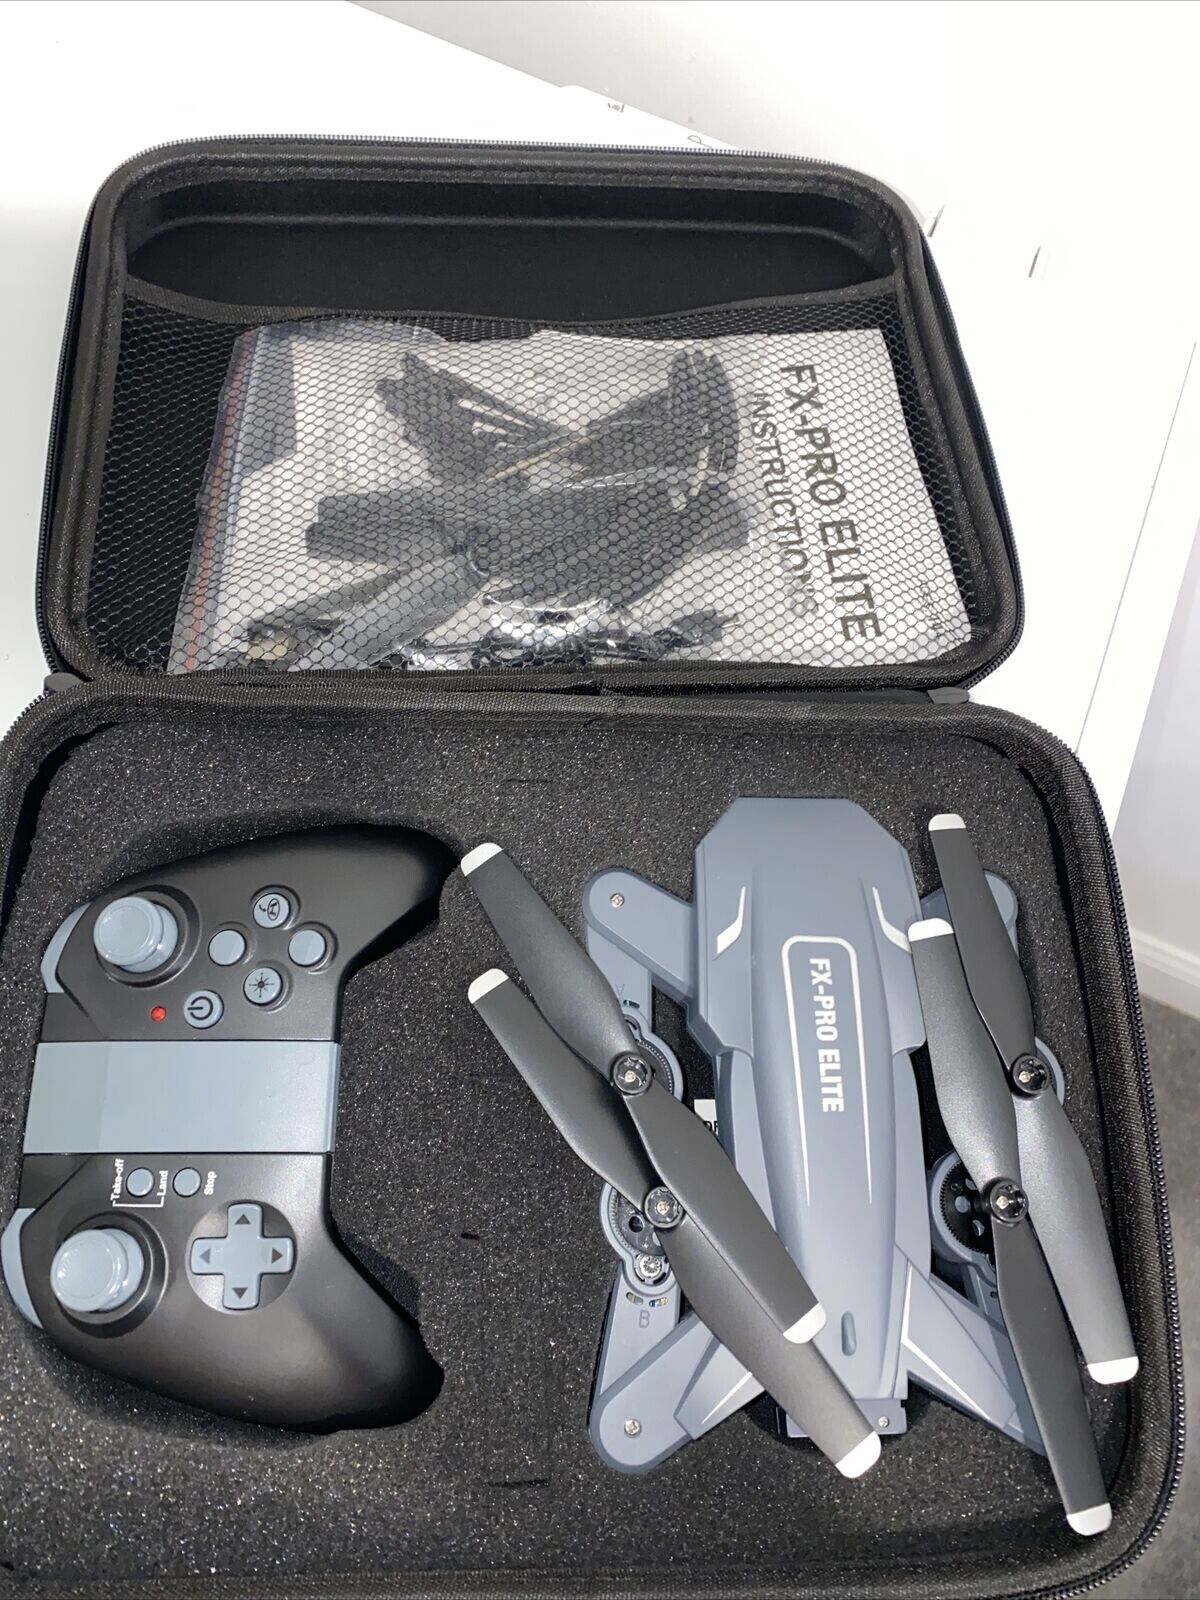 FX-Pro Elite Foldable Drone RRP £199.99